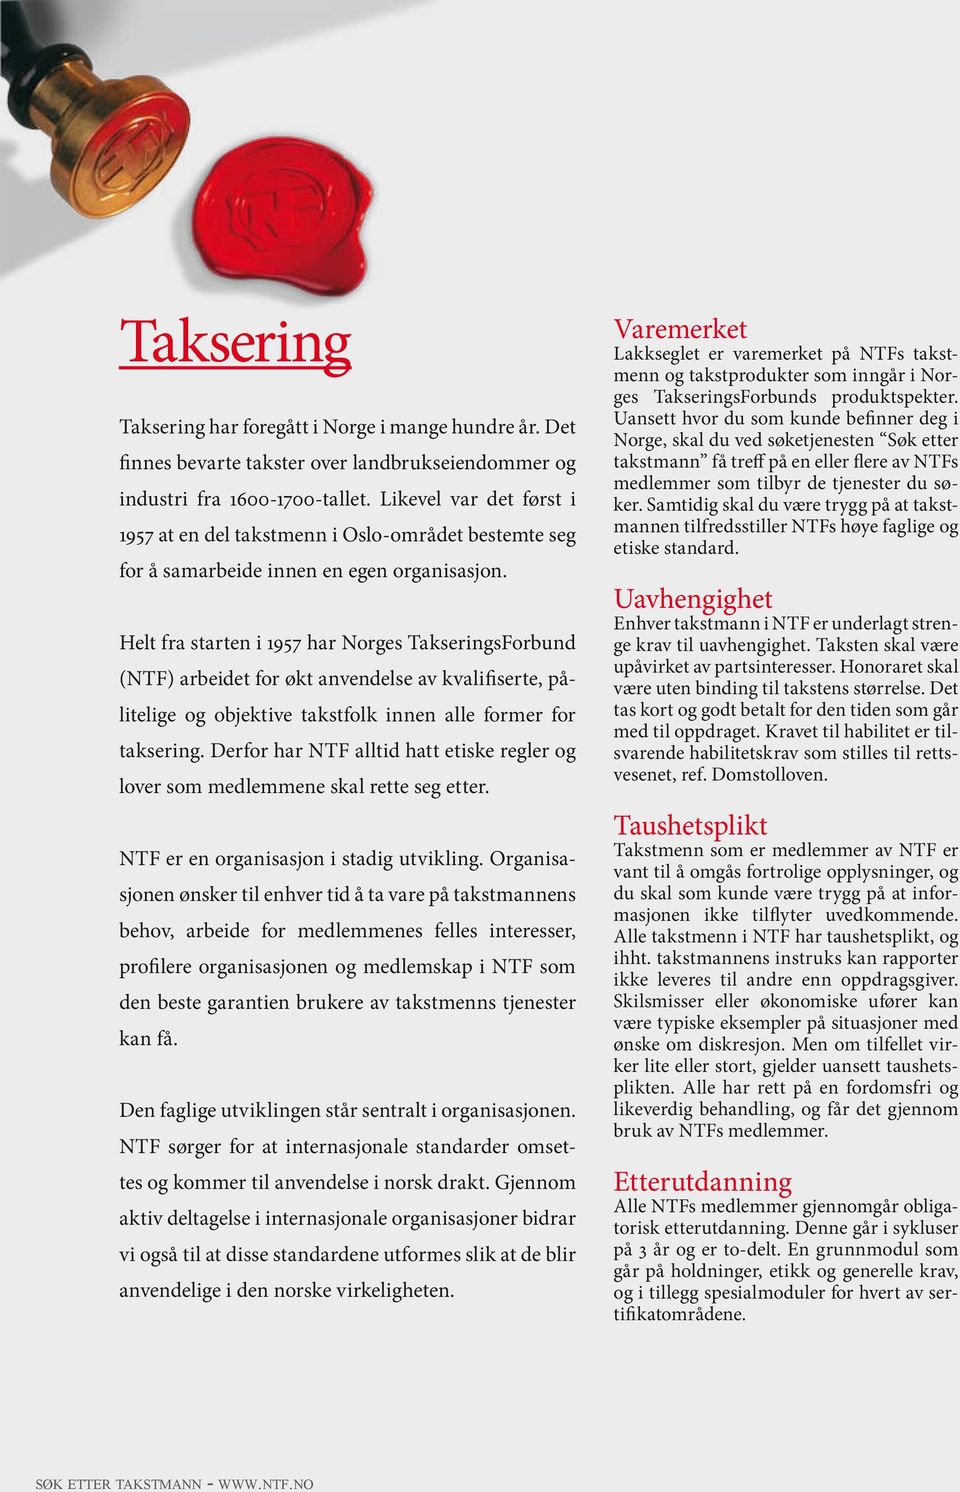 Helt fra starten i 1957 har Norges TakseringsForbund (NTF) arbeidet for økt anvendelse av kvalifiserte, pålitelige og objektive takstfolk innen alle former for taksering.